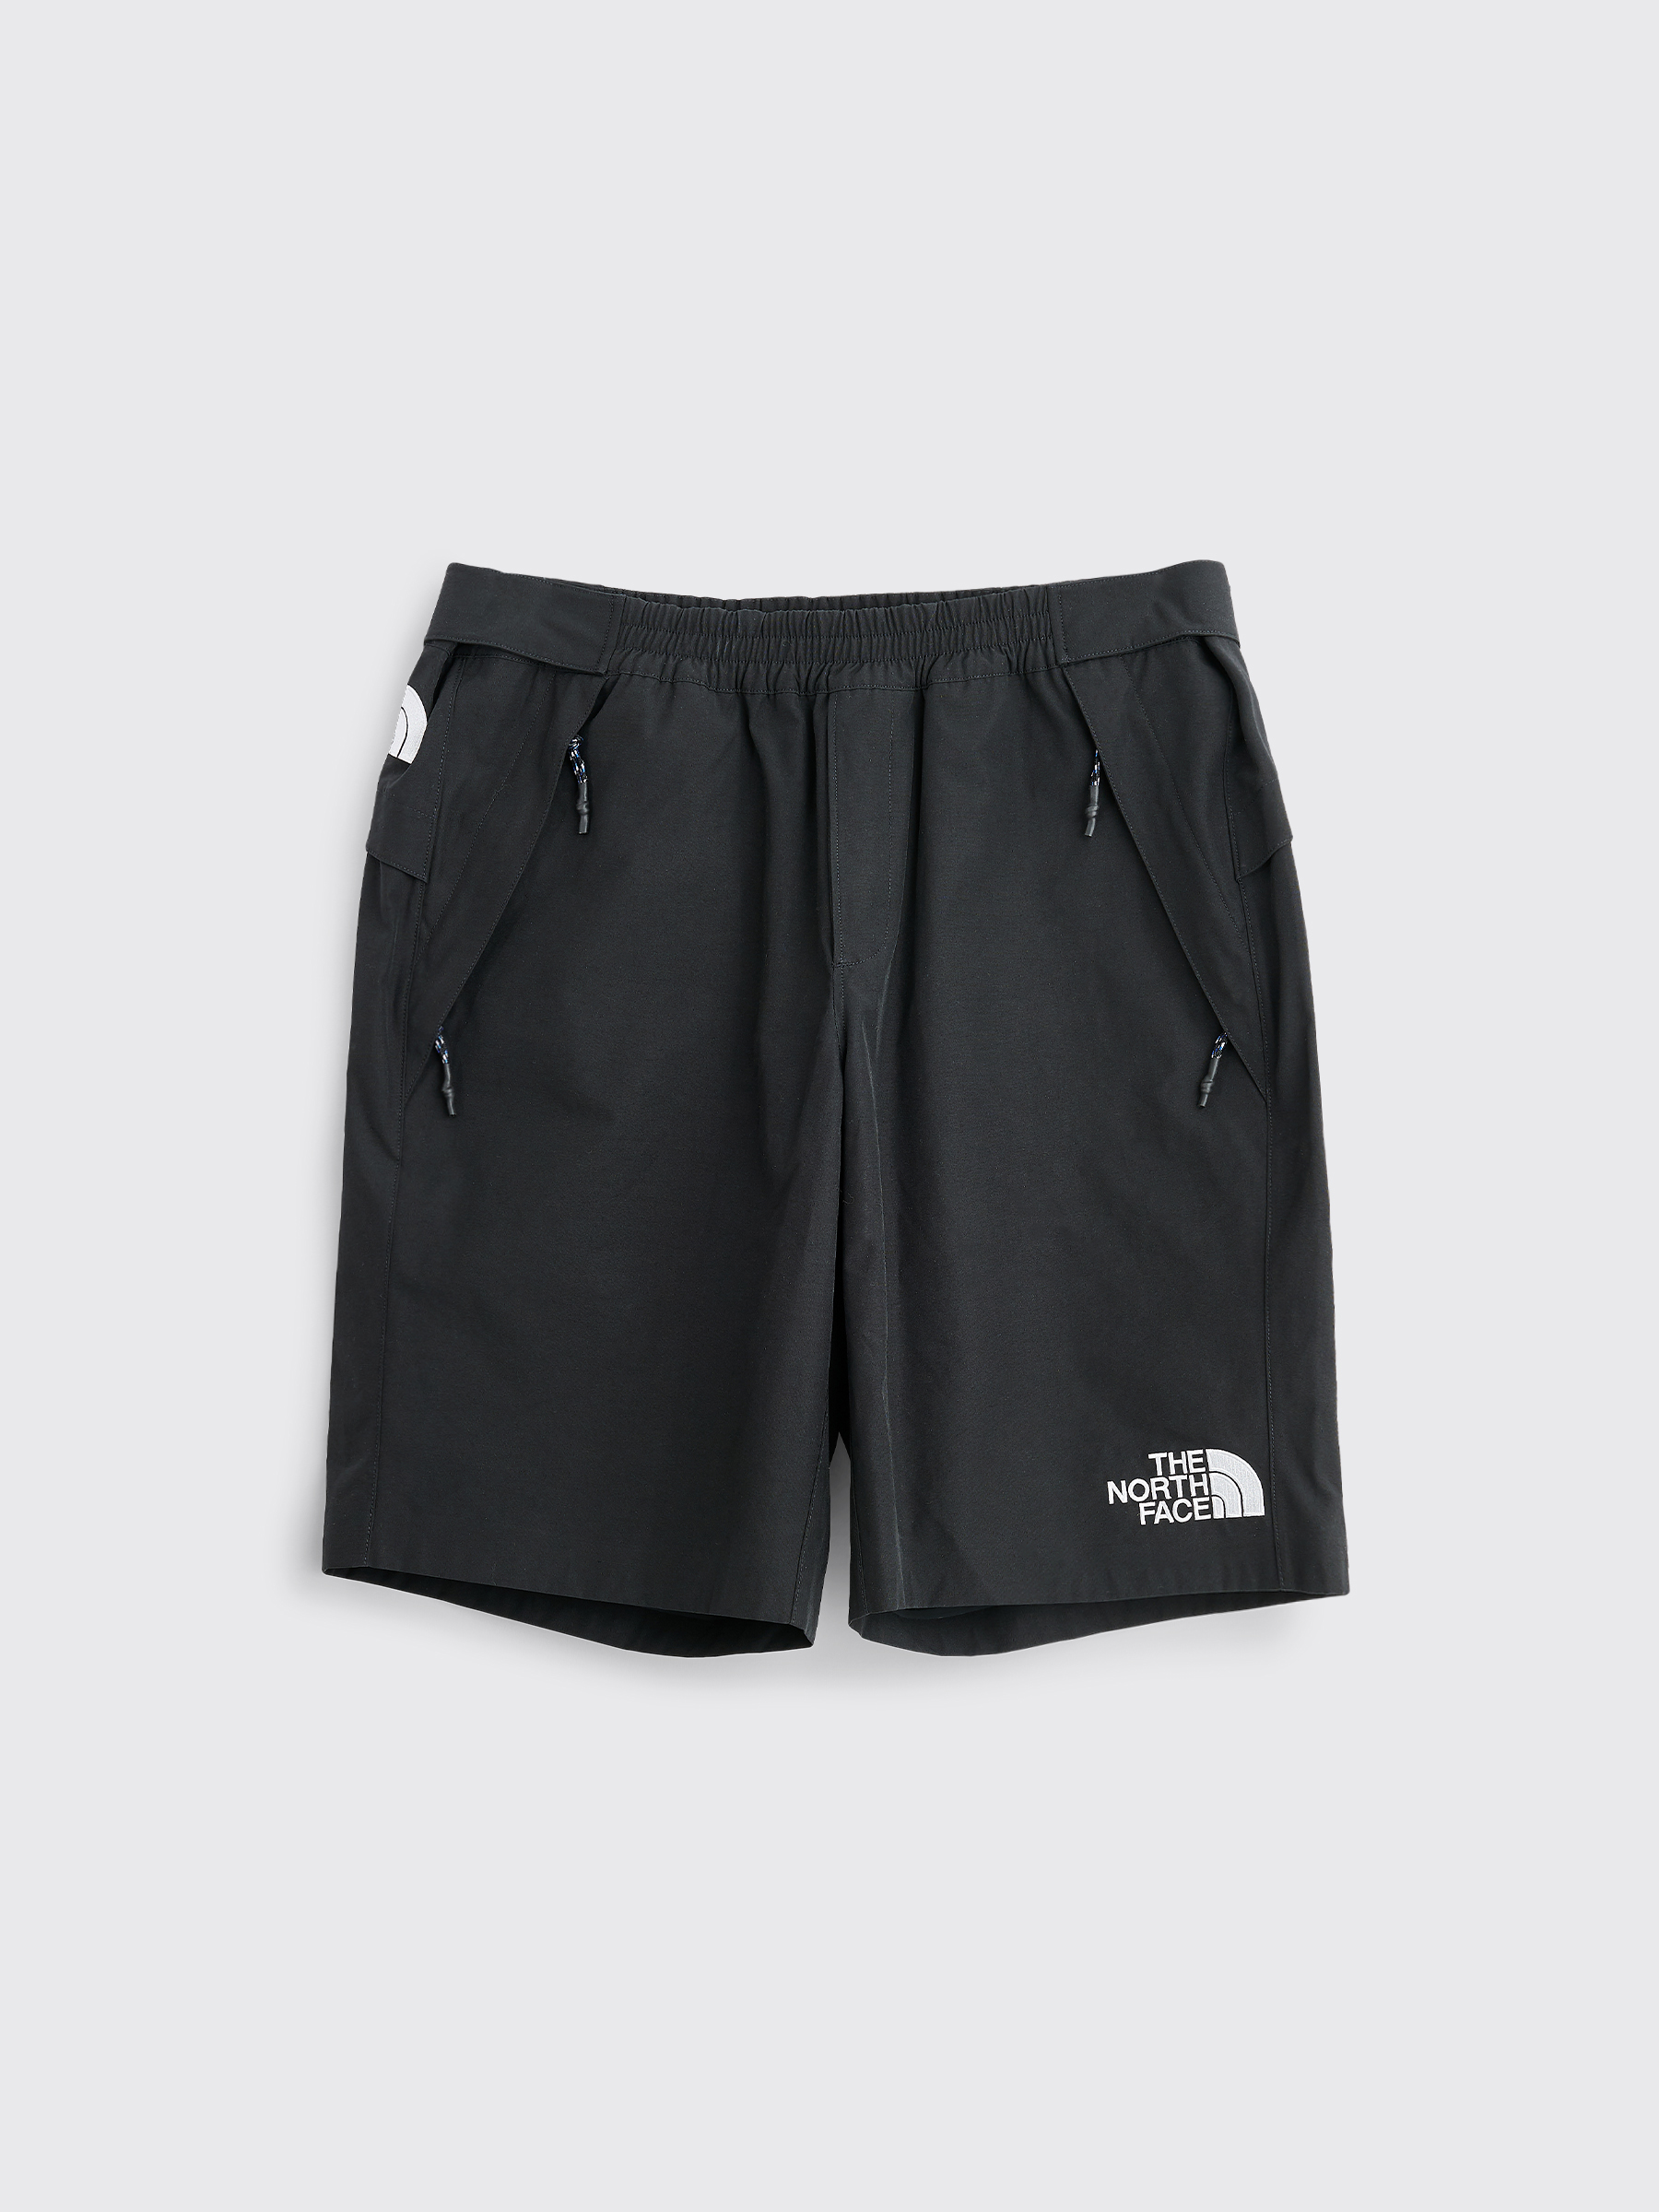 north face nylon shorts